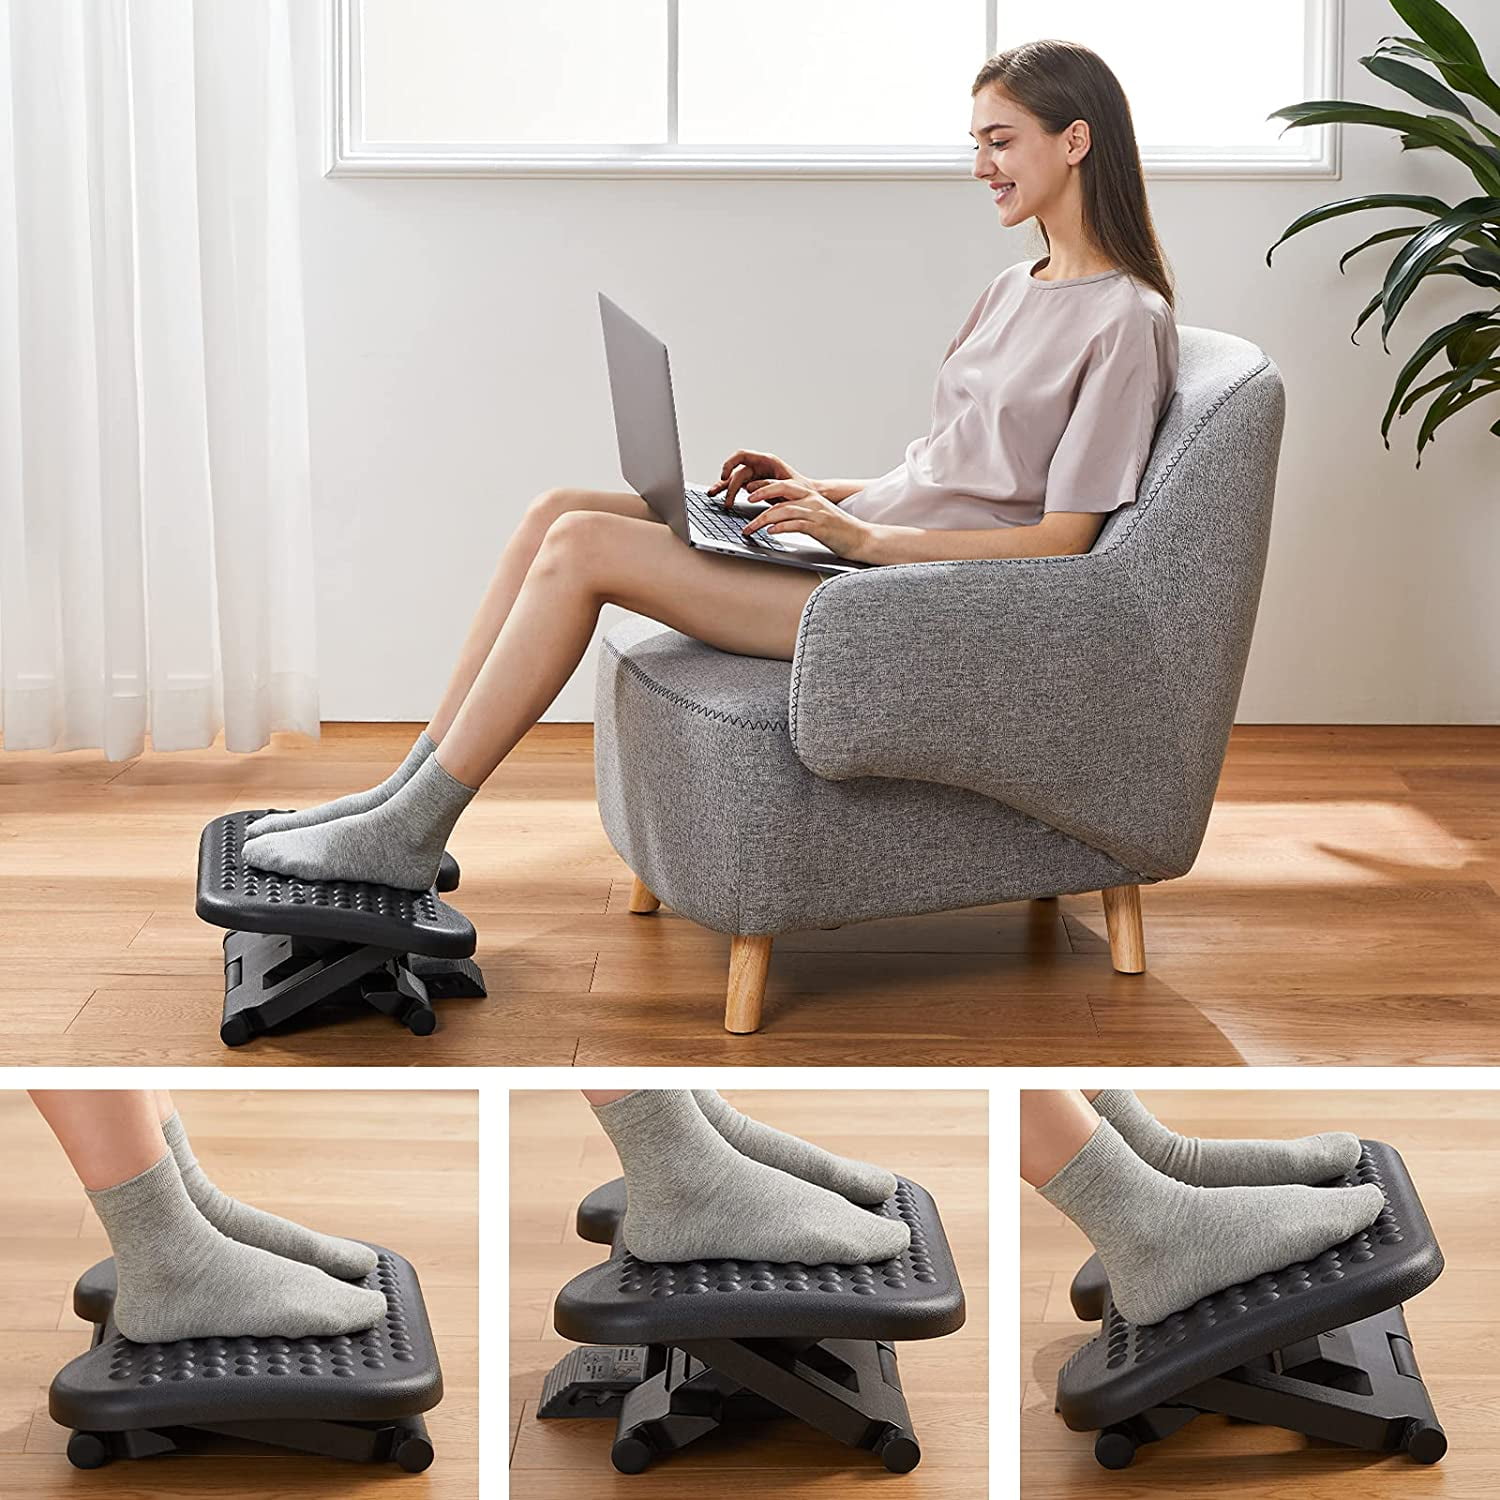 Foot Rest for under Desk at Work,Adjustable Foot Rest for Optimum Leve –  SHANULKA Home Decor